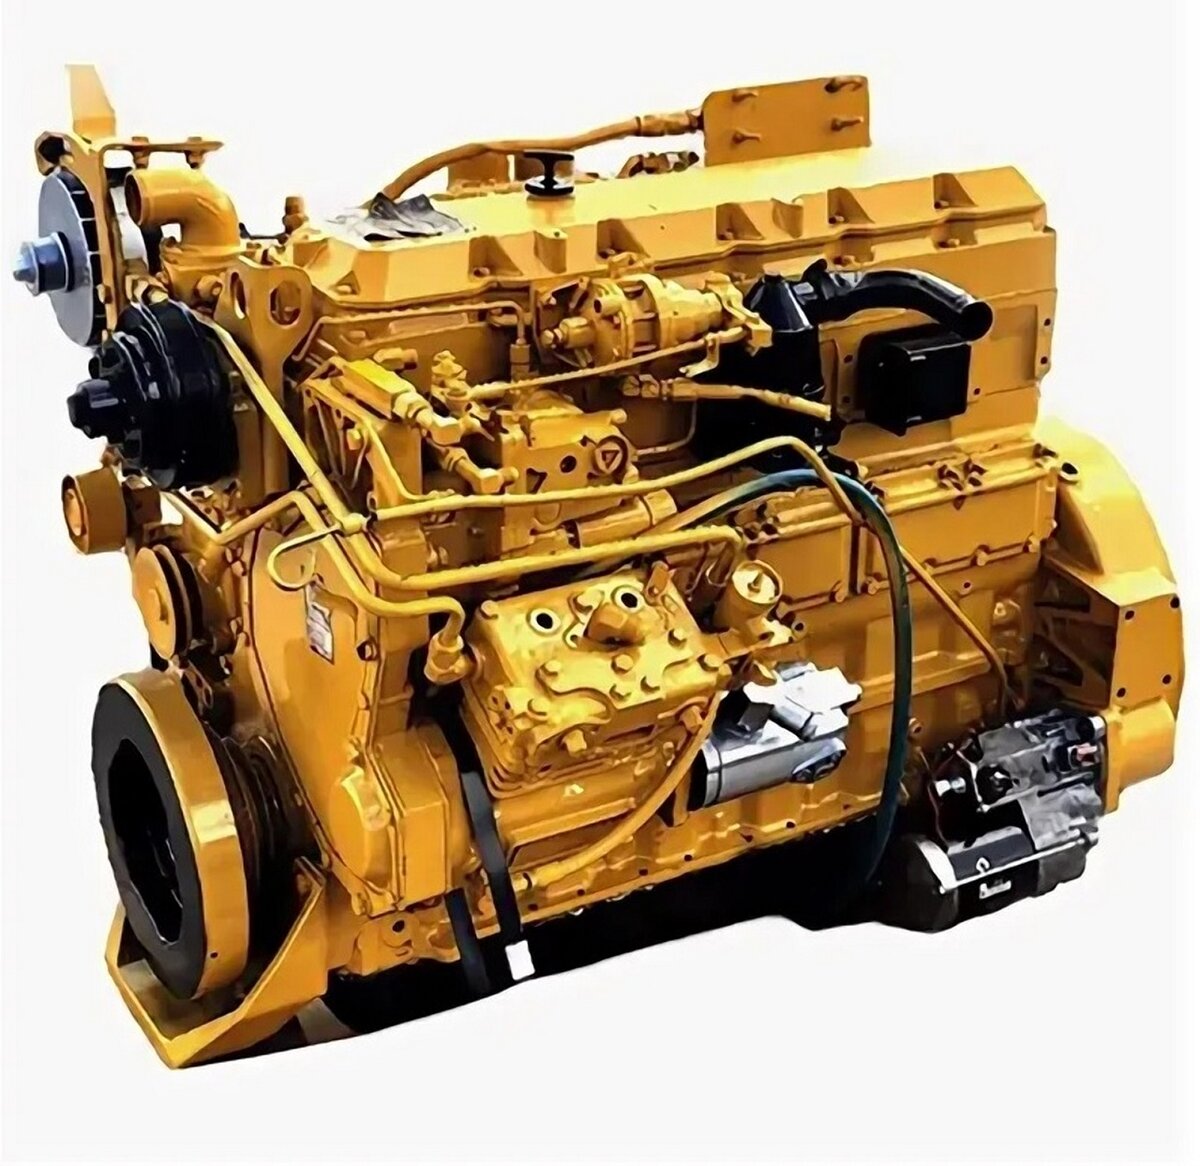 Двигатель сат. Двигатель Катерпиллер 3116. Мотор Катерпиллер с 15. Cat 3116 двигатель. Двигатель дизельный Caterpillar с11.